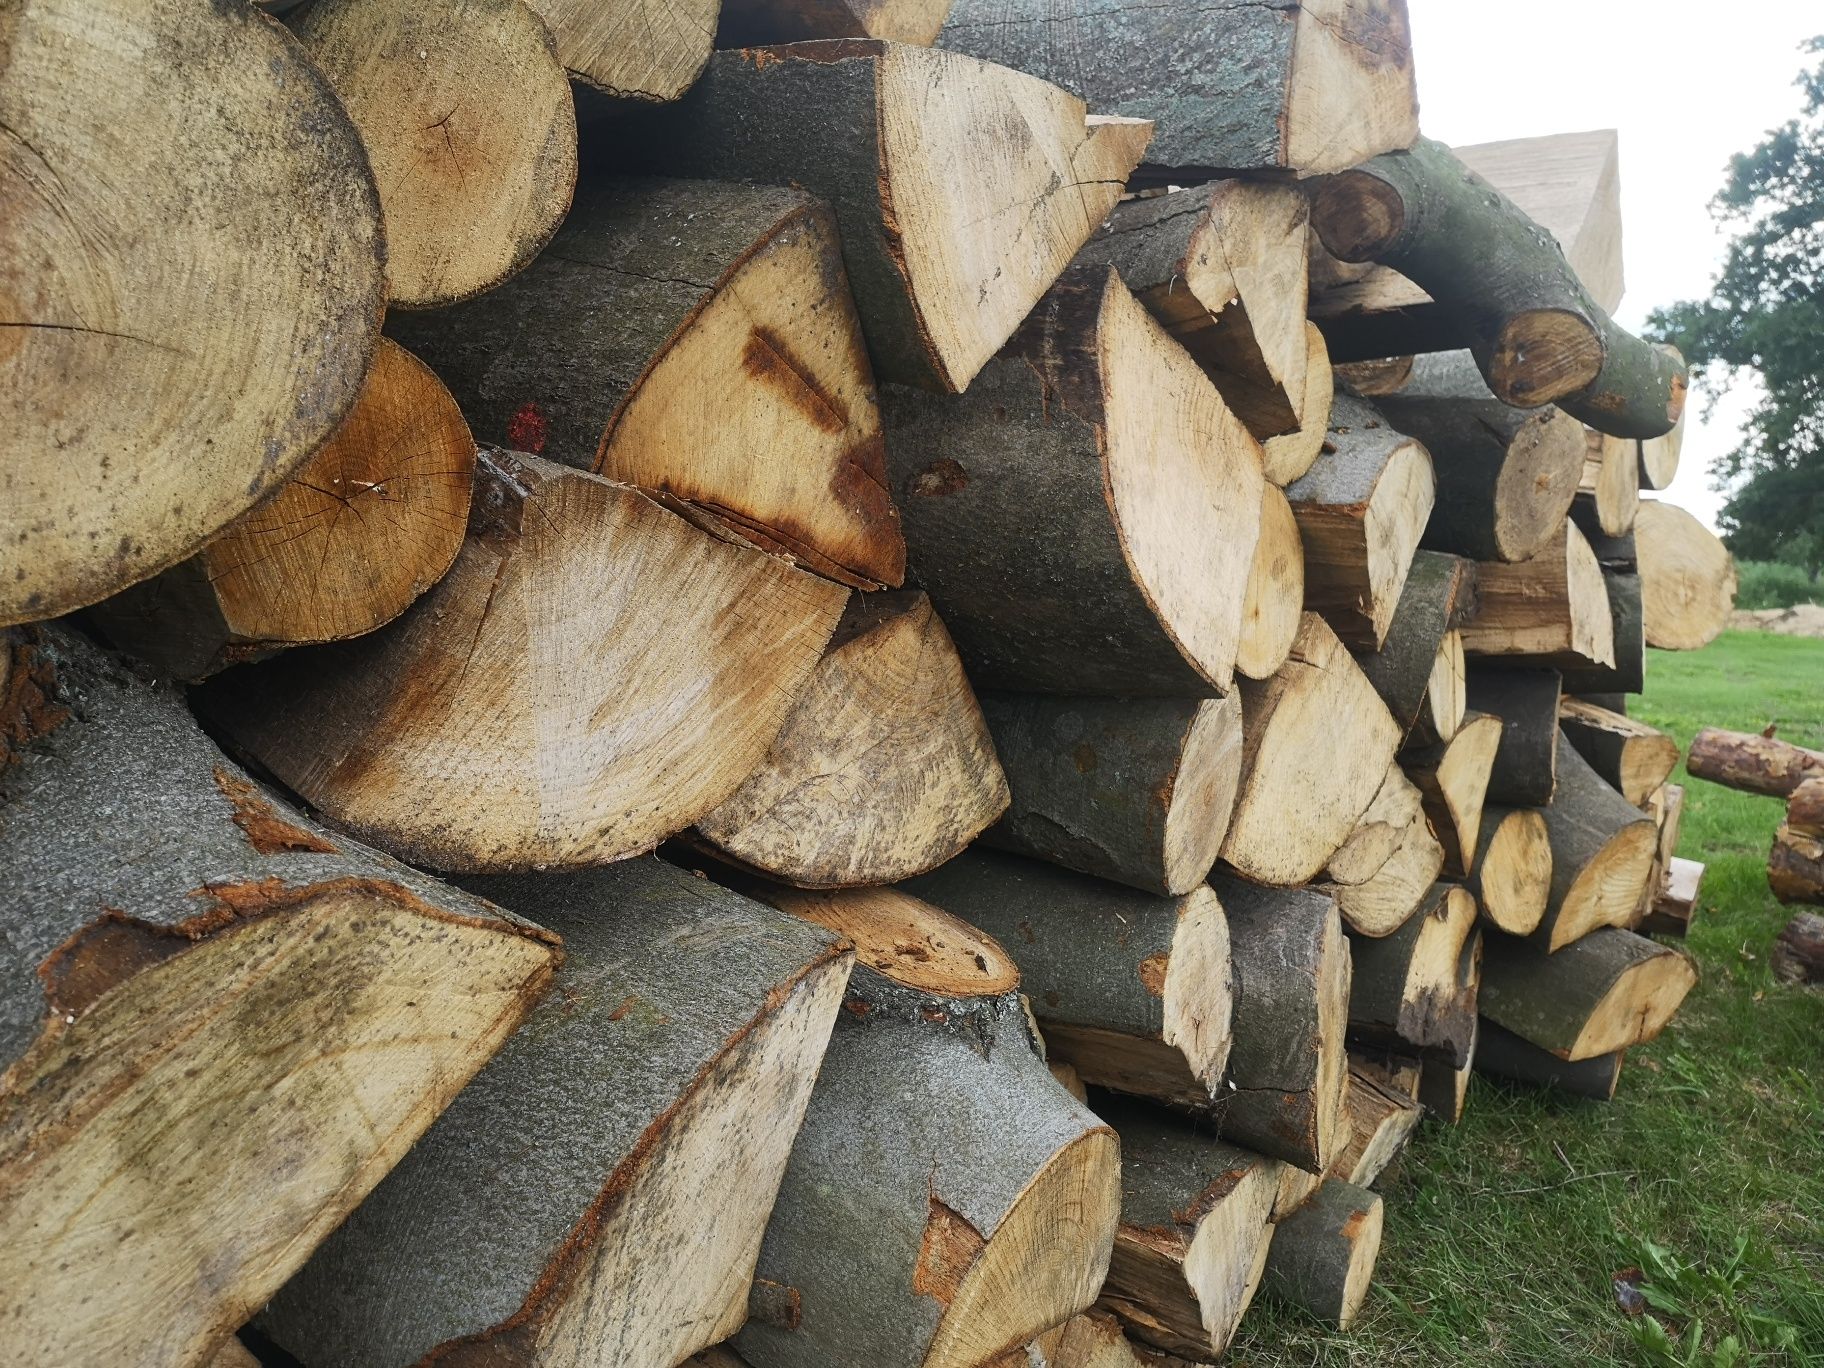 Drewno Opałowe suche sezon okazja ł